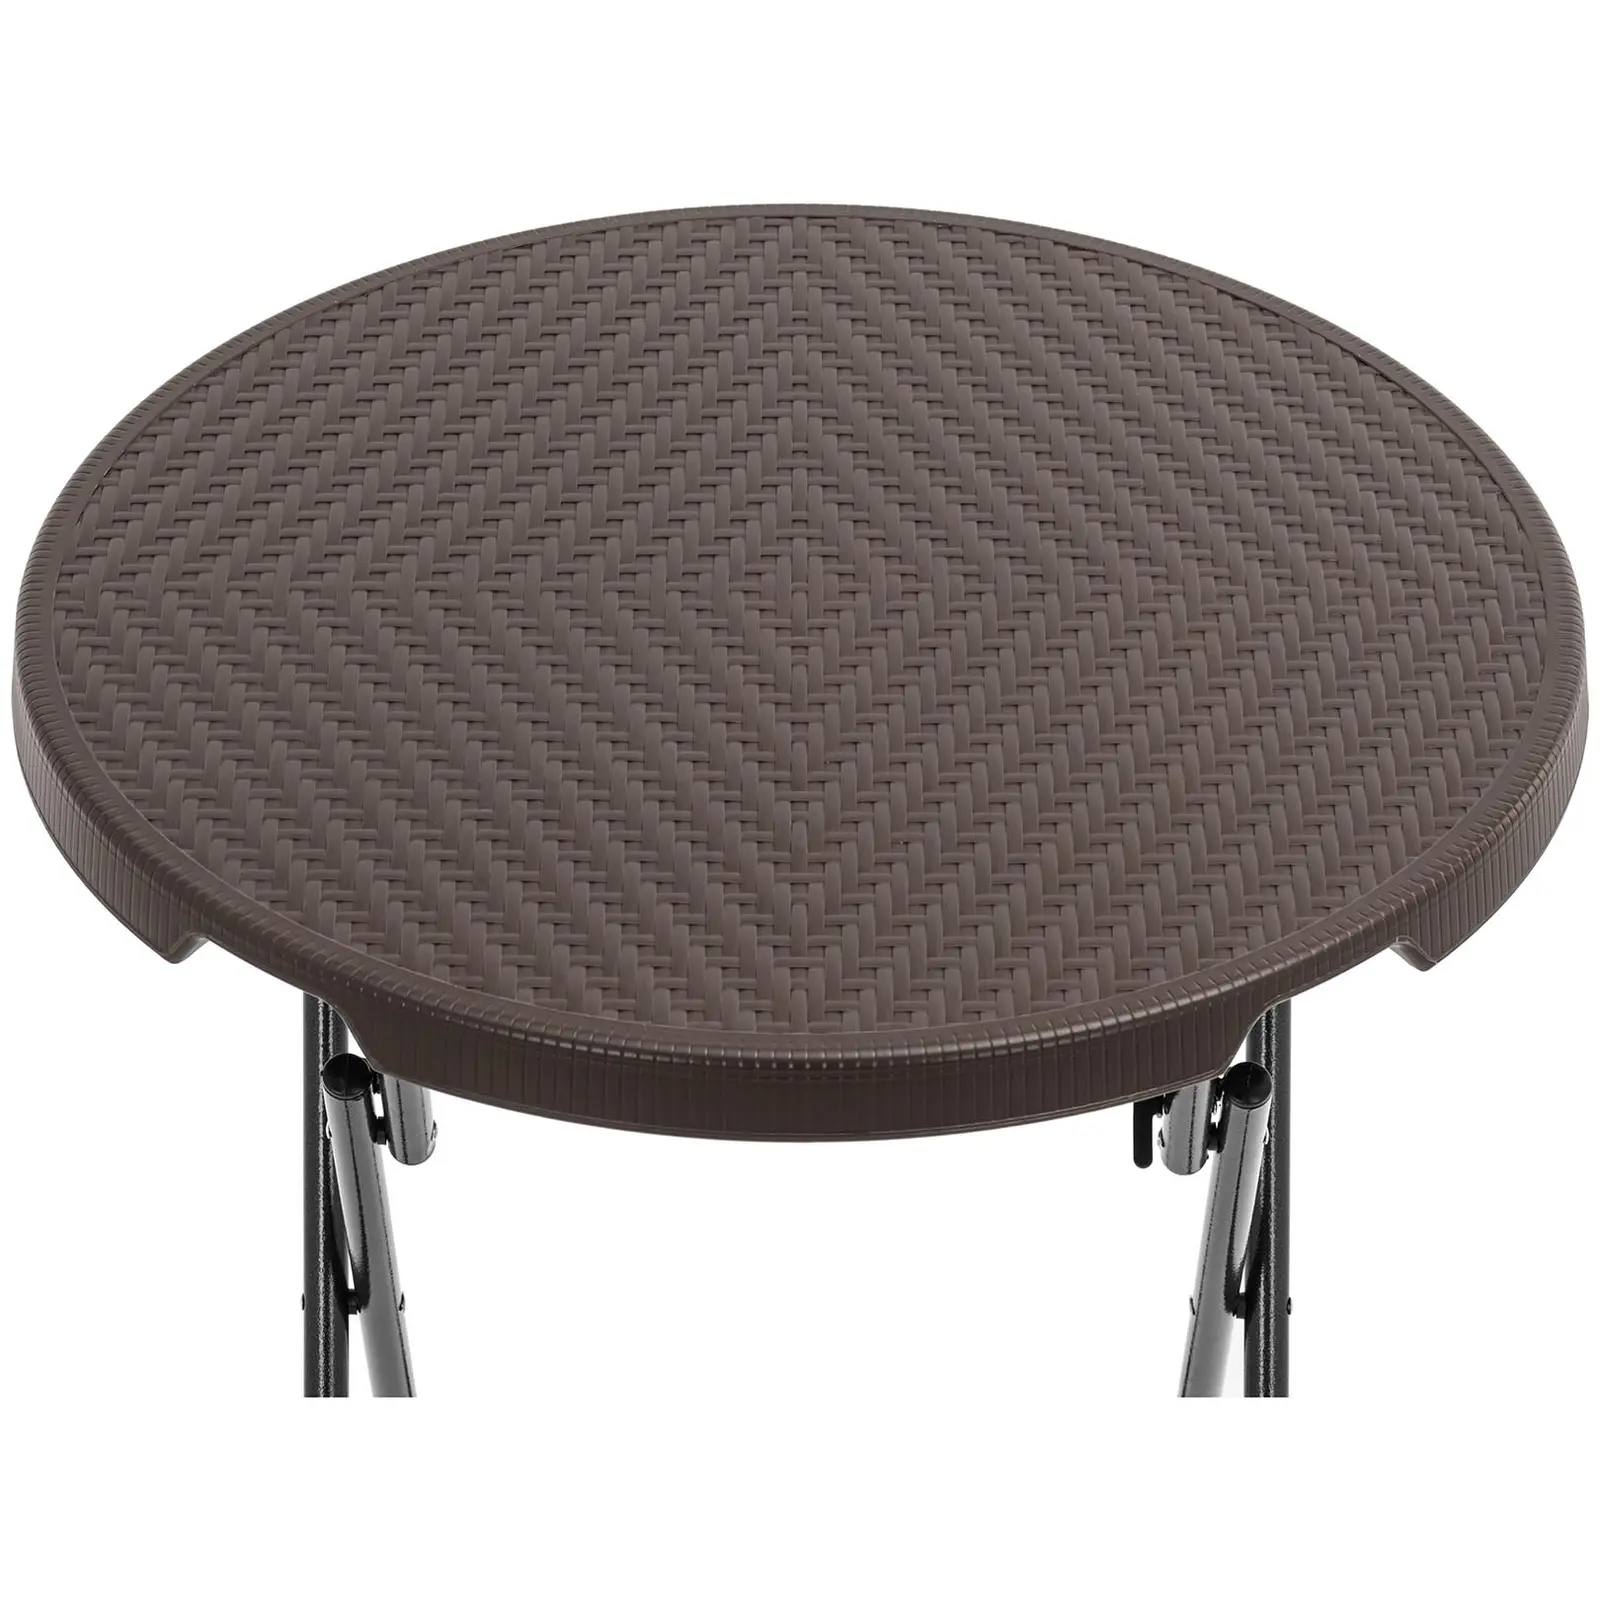 Folding Table - 0 x 0 x 0 cm - 75 kg - indoor/outdoor - black